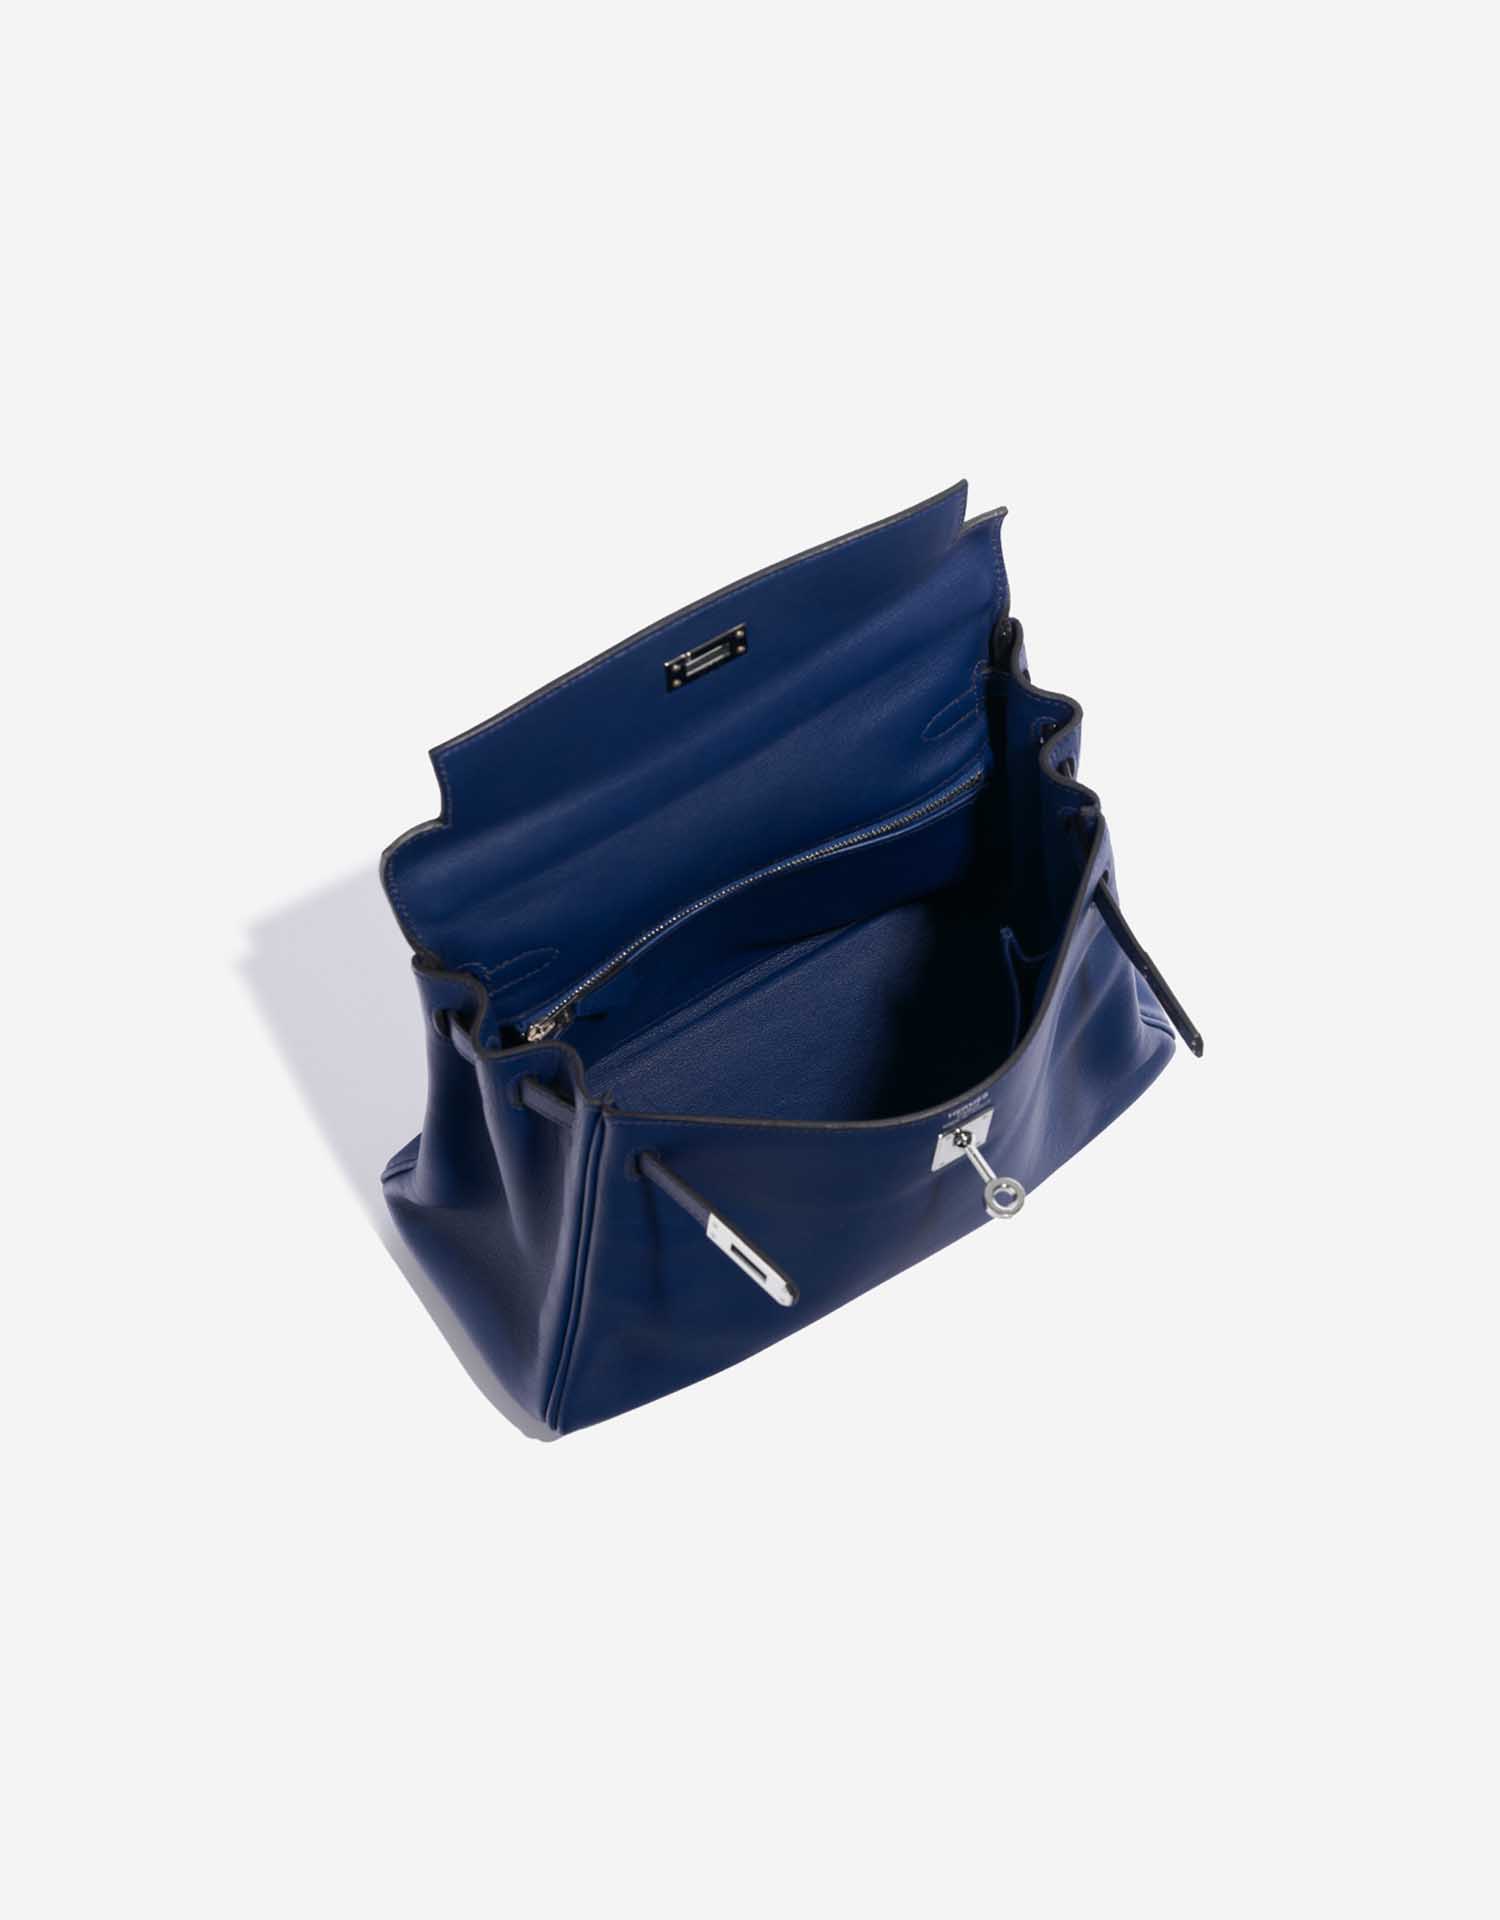 Pre-owned Hermès bag Kelly 25 Swift Blue Saphir Blue Inside | Sell your designer bag on Saclab.com